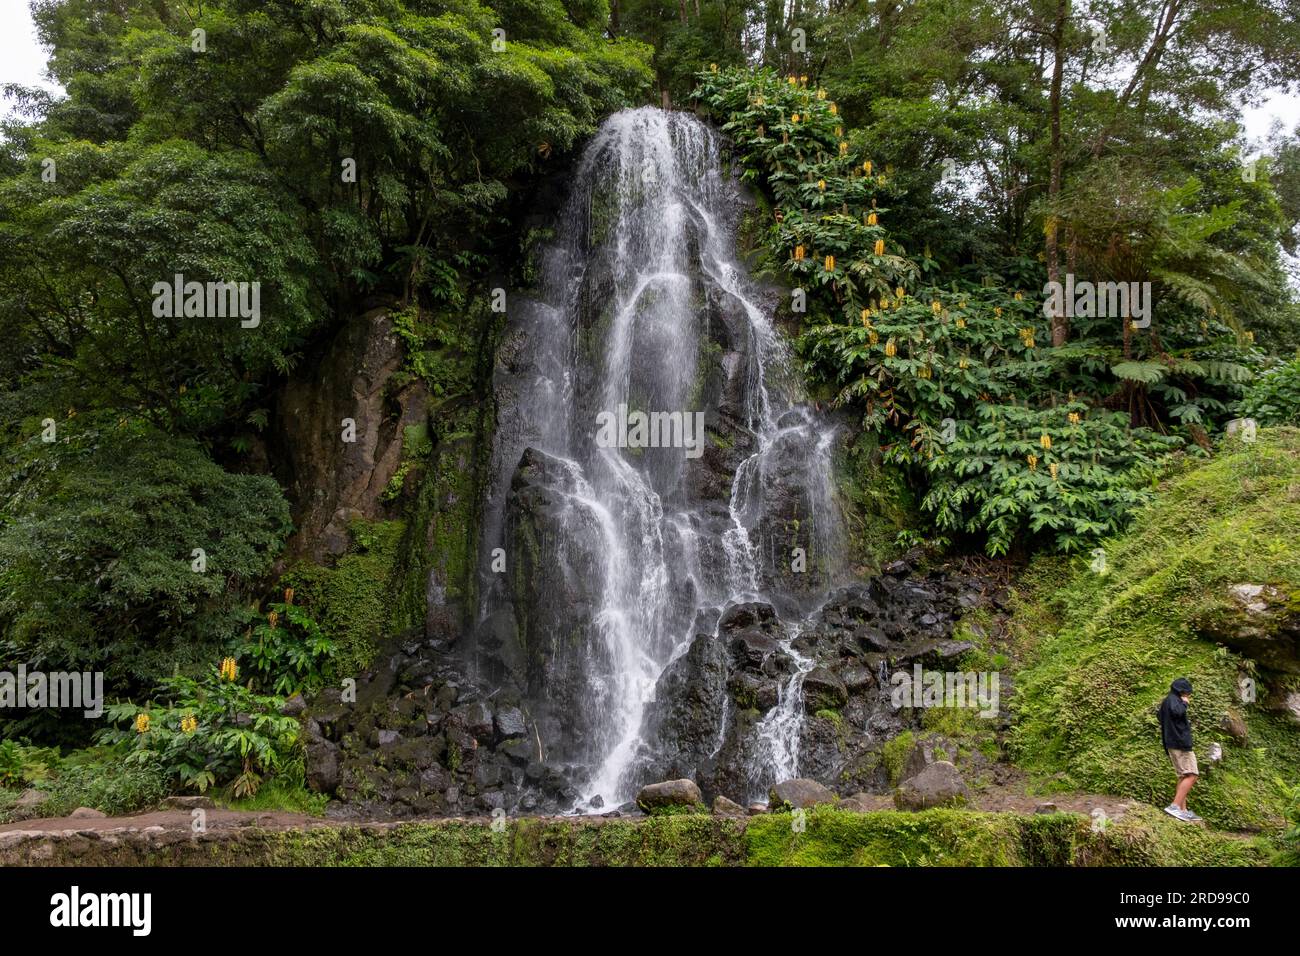 Nordeste, Azores - 07.09.2019: Cascada en el Jardín Botánico de Ribeira do Guilherme en Nordeste, isla Sao Miguel en las Azores. Foto de stock